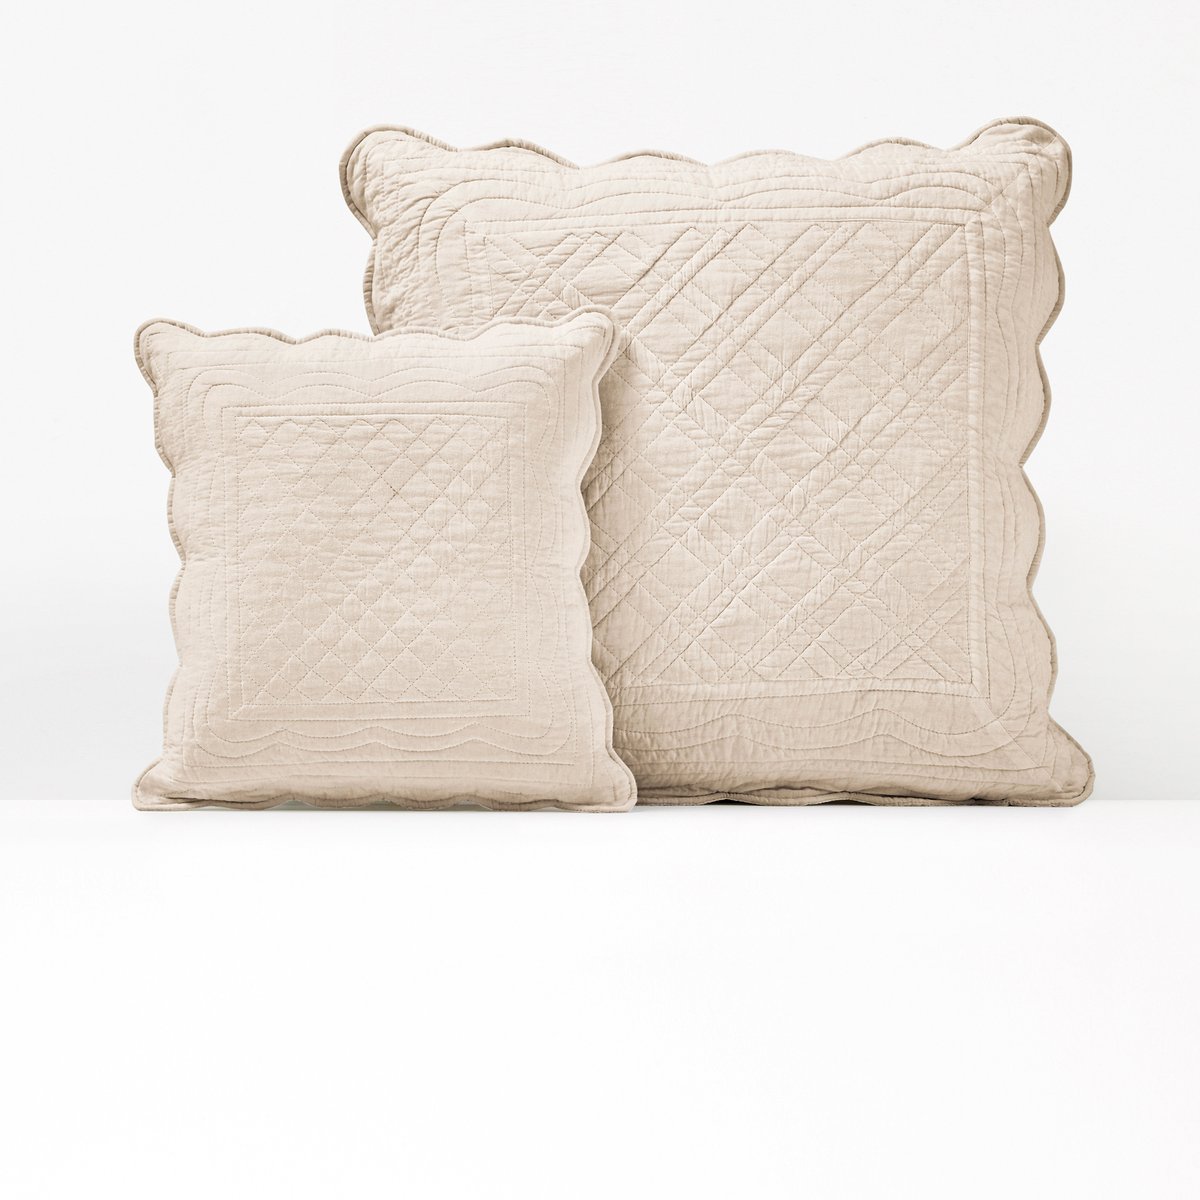 Чехол La Redoute На подушку или подушку-валик из хлопка SCENARIO 65 x 65 см белый, размер 65 x 65 см - фото 1